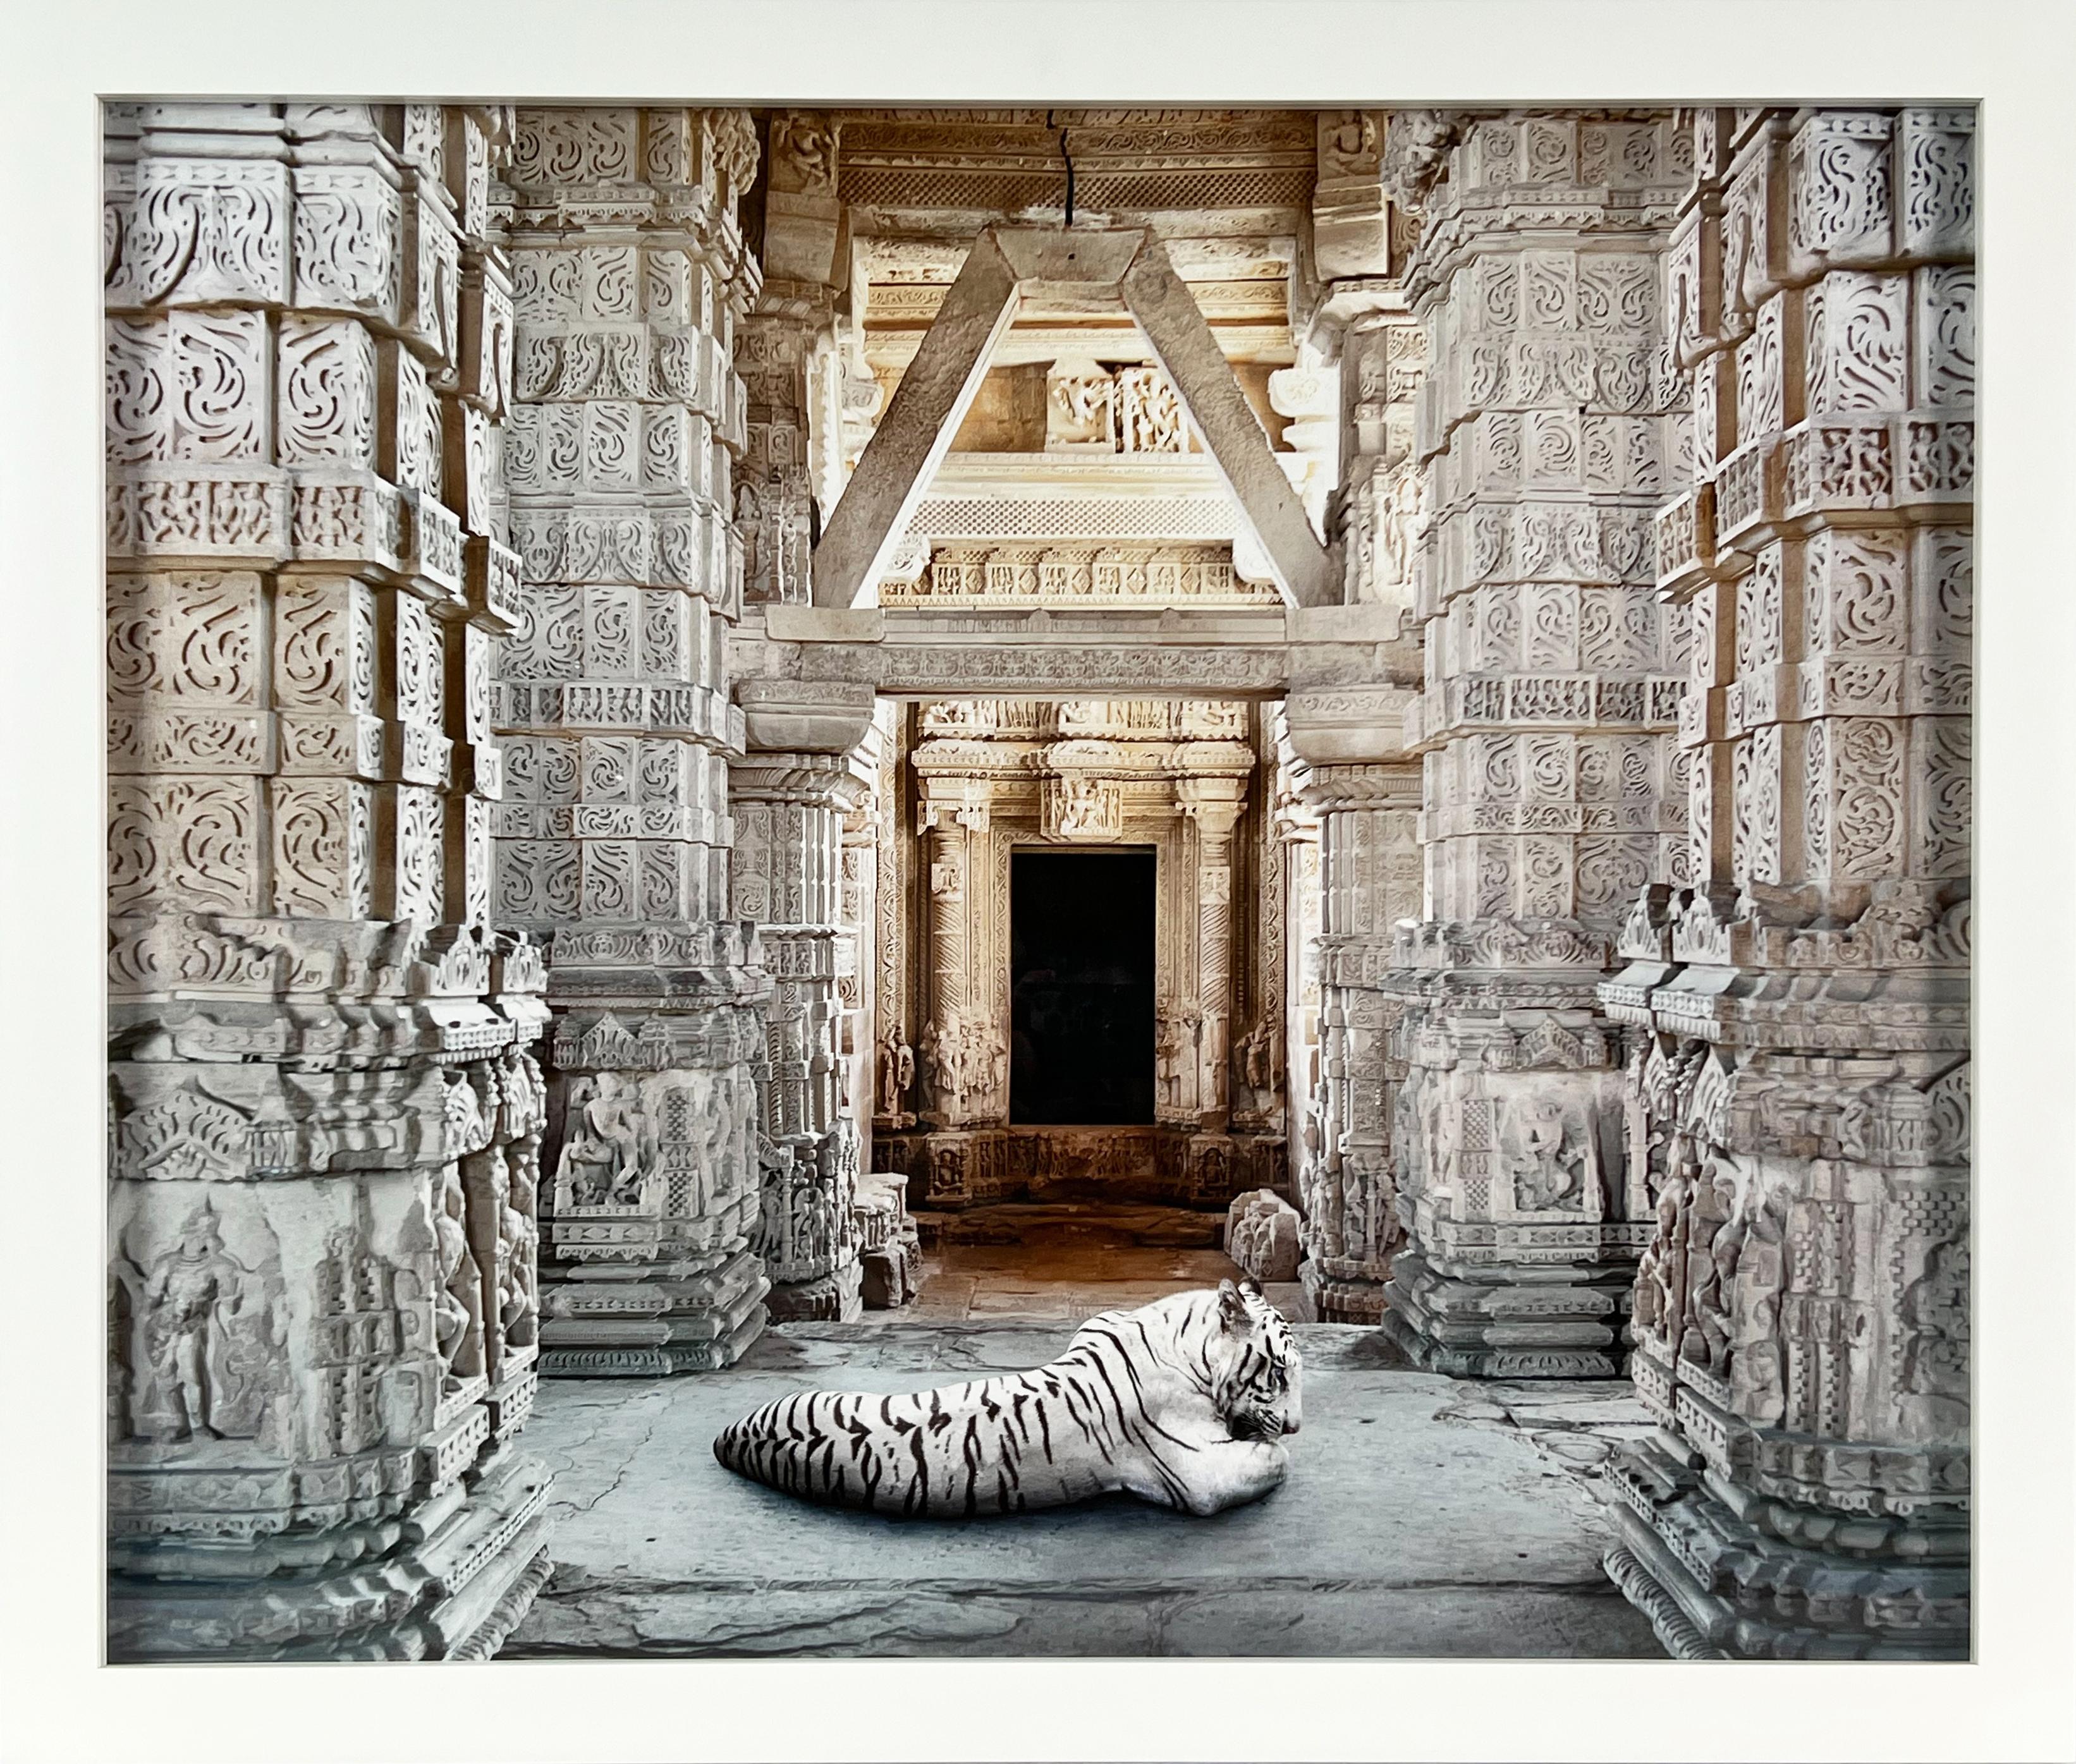 Arihanta bientôt Arihanta, temple Sahastrabahu, Gwailor - Photograph de Karen Knorr